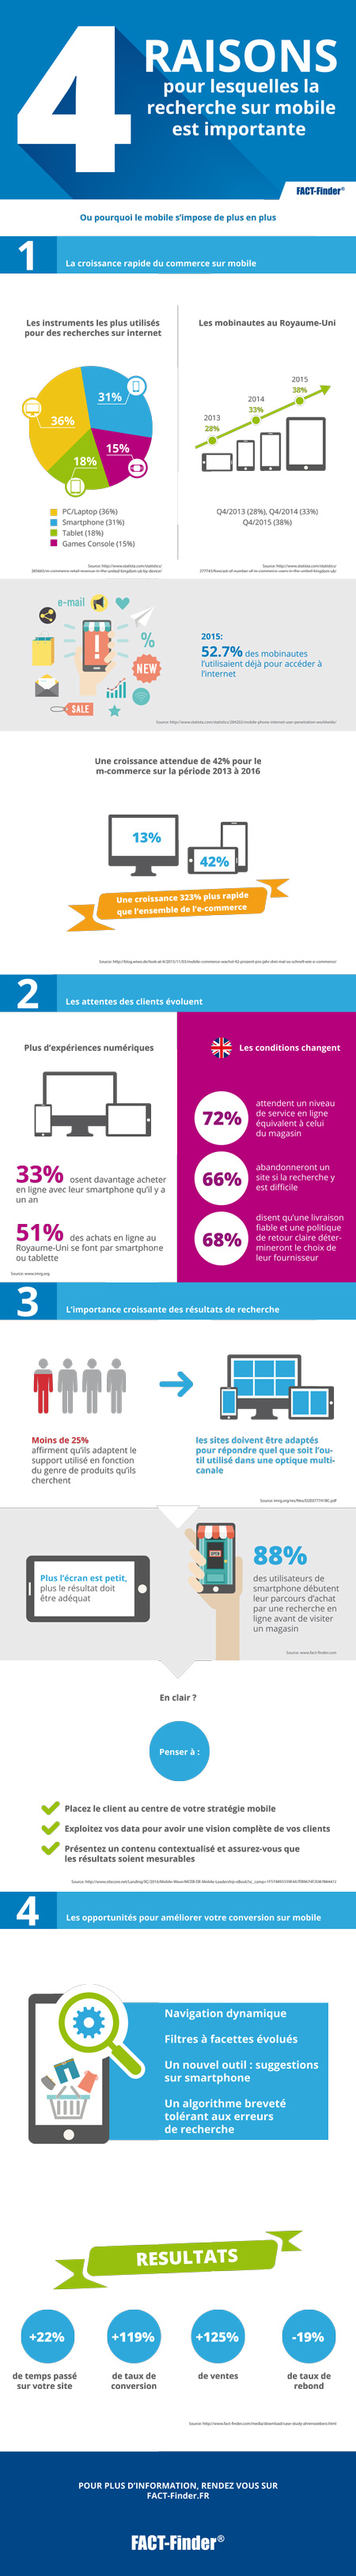 Infographie : L'importance du mobile